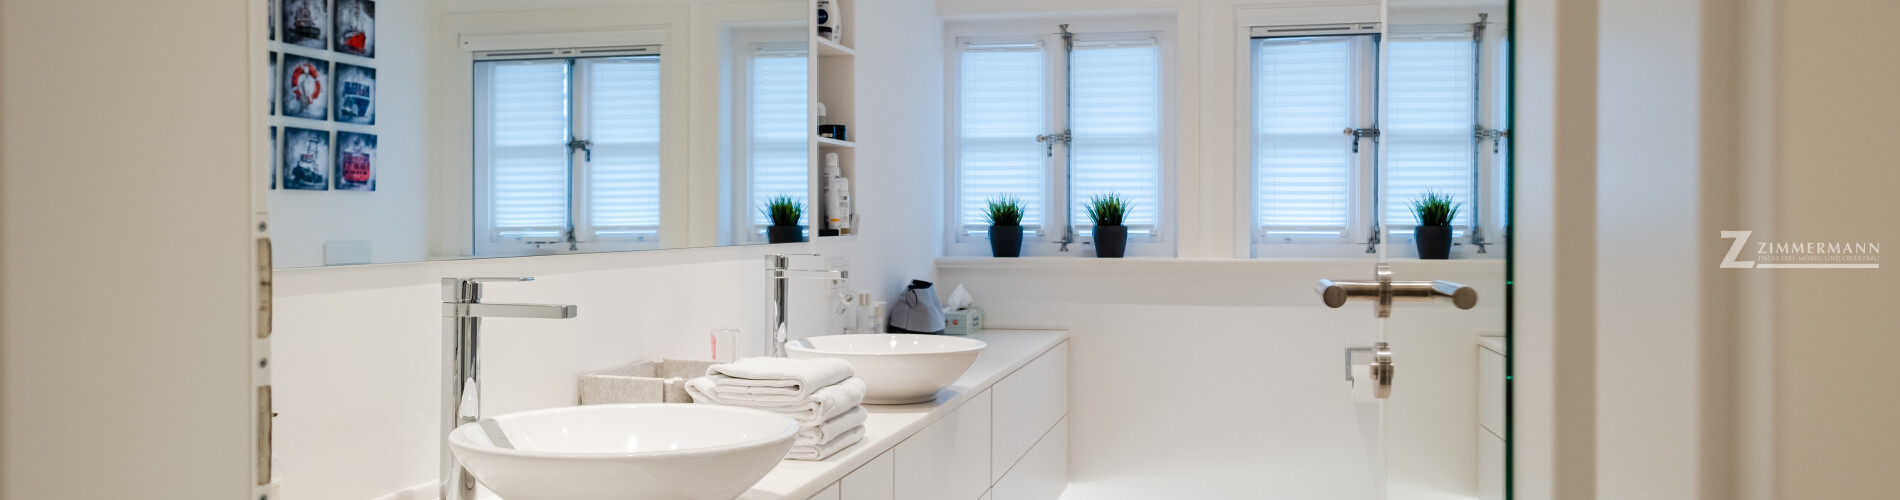 tischlerei-zimmermann-harmstorf-badezimmer-waschbecken-schubladen-spiegel-dekoration